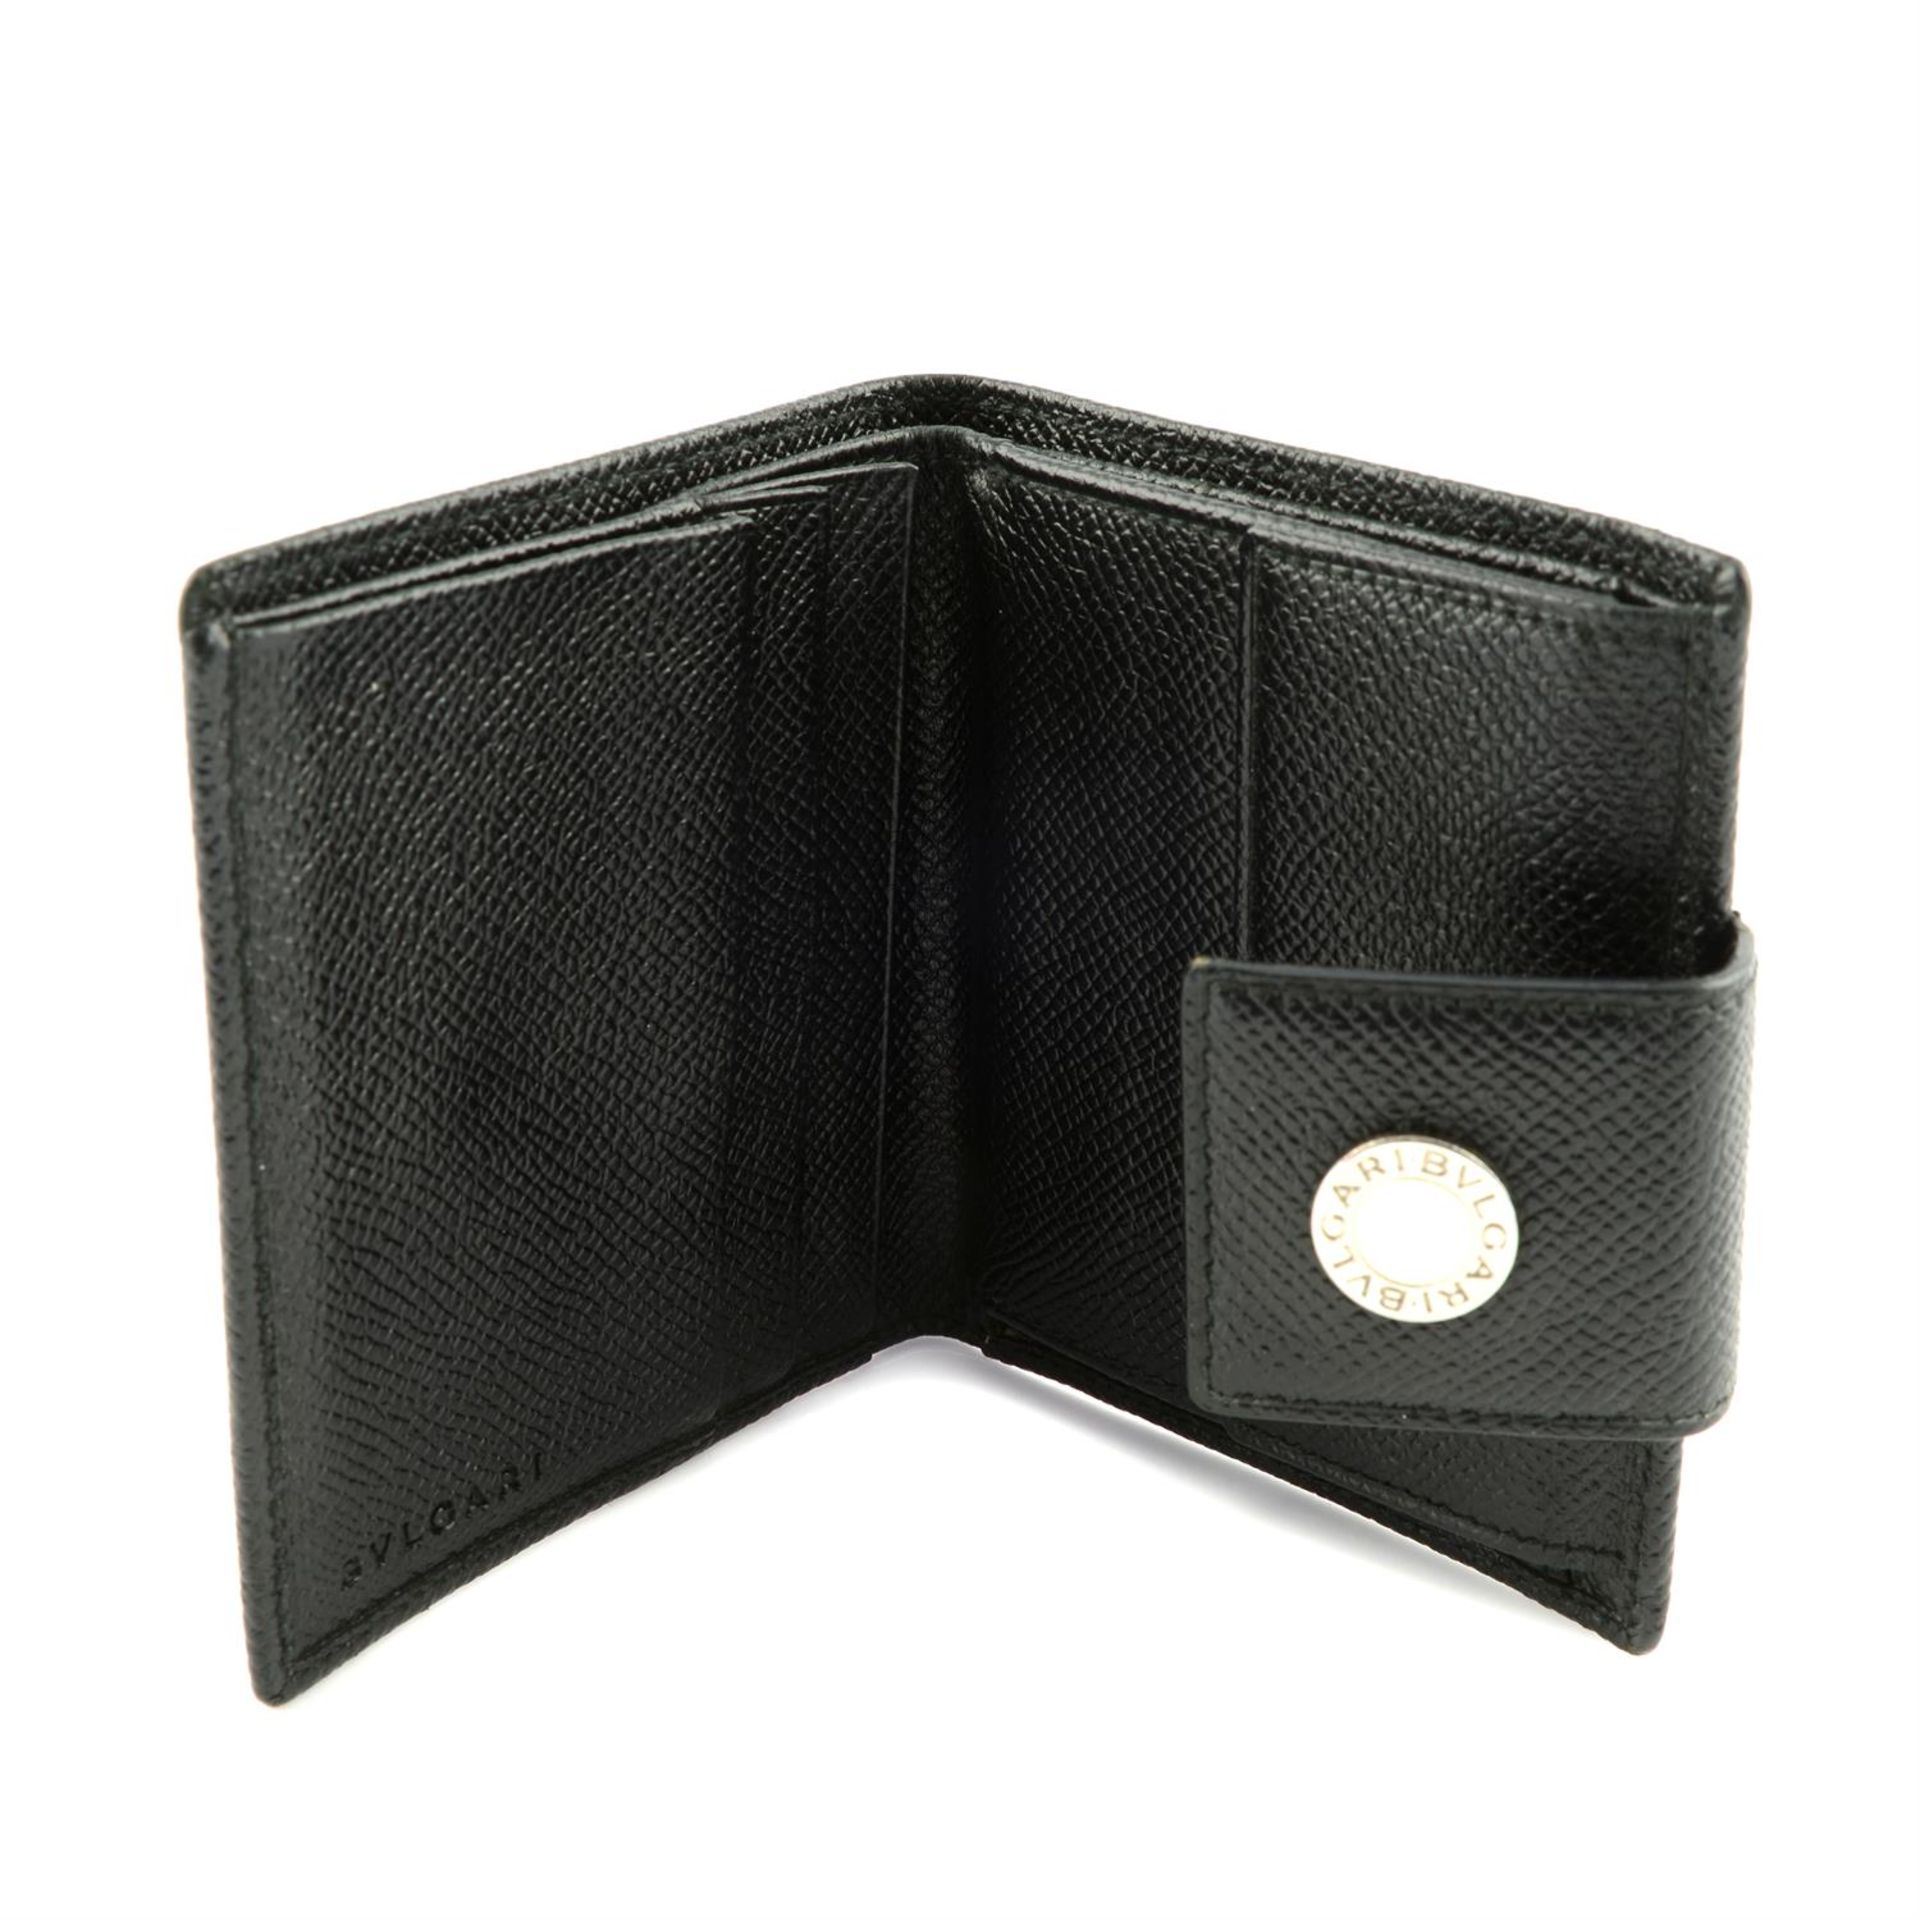 BULGARI - two wallets. - Image 3 of 3